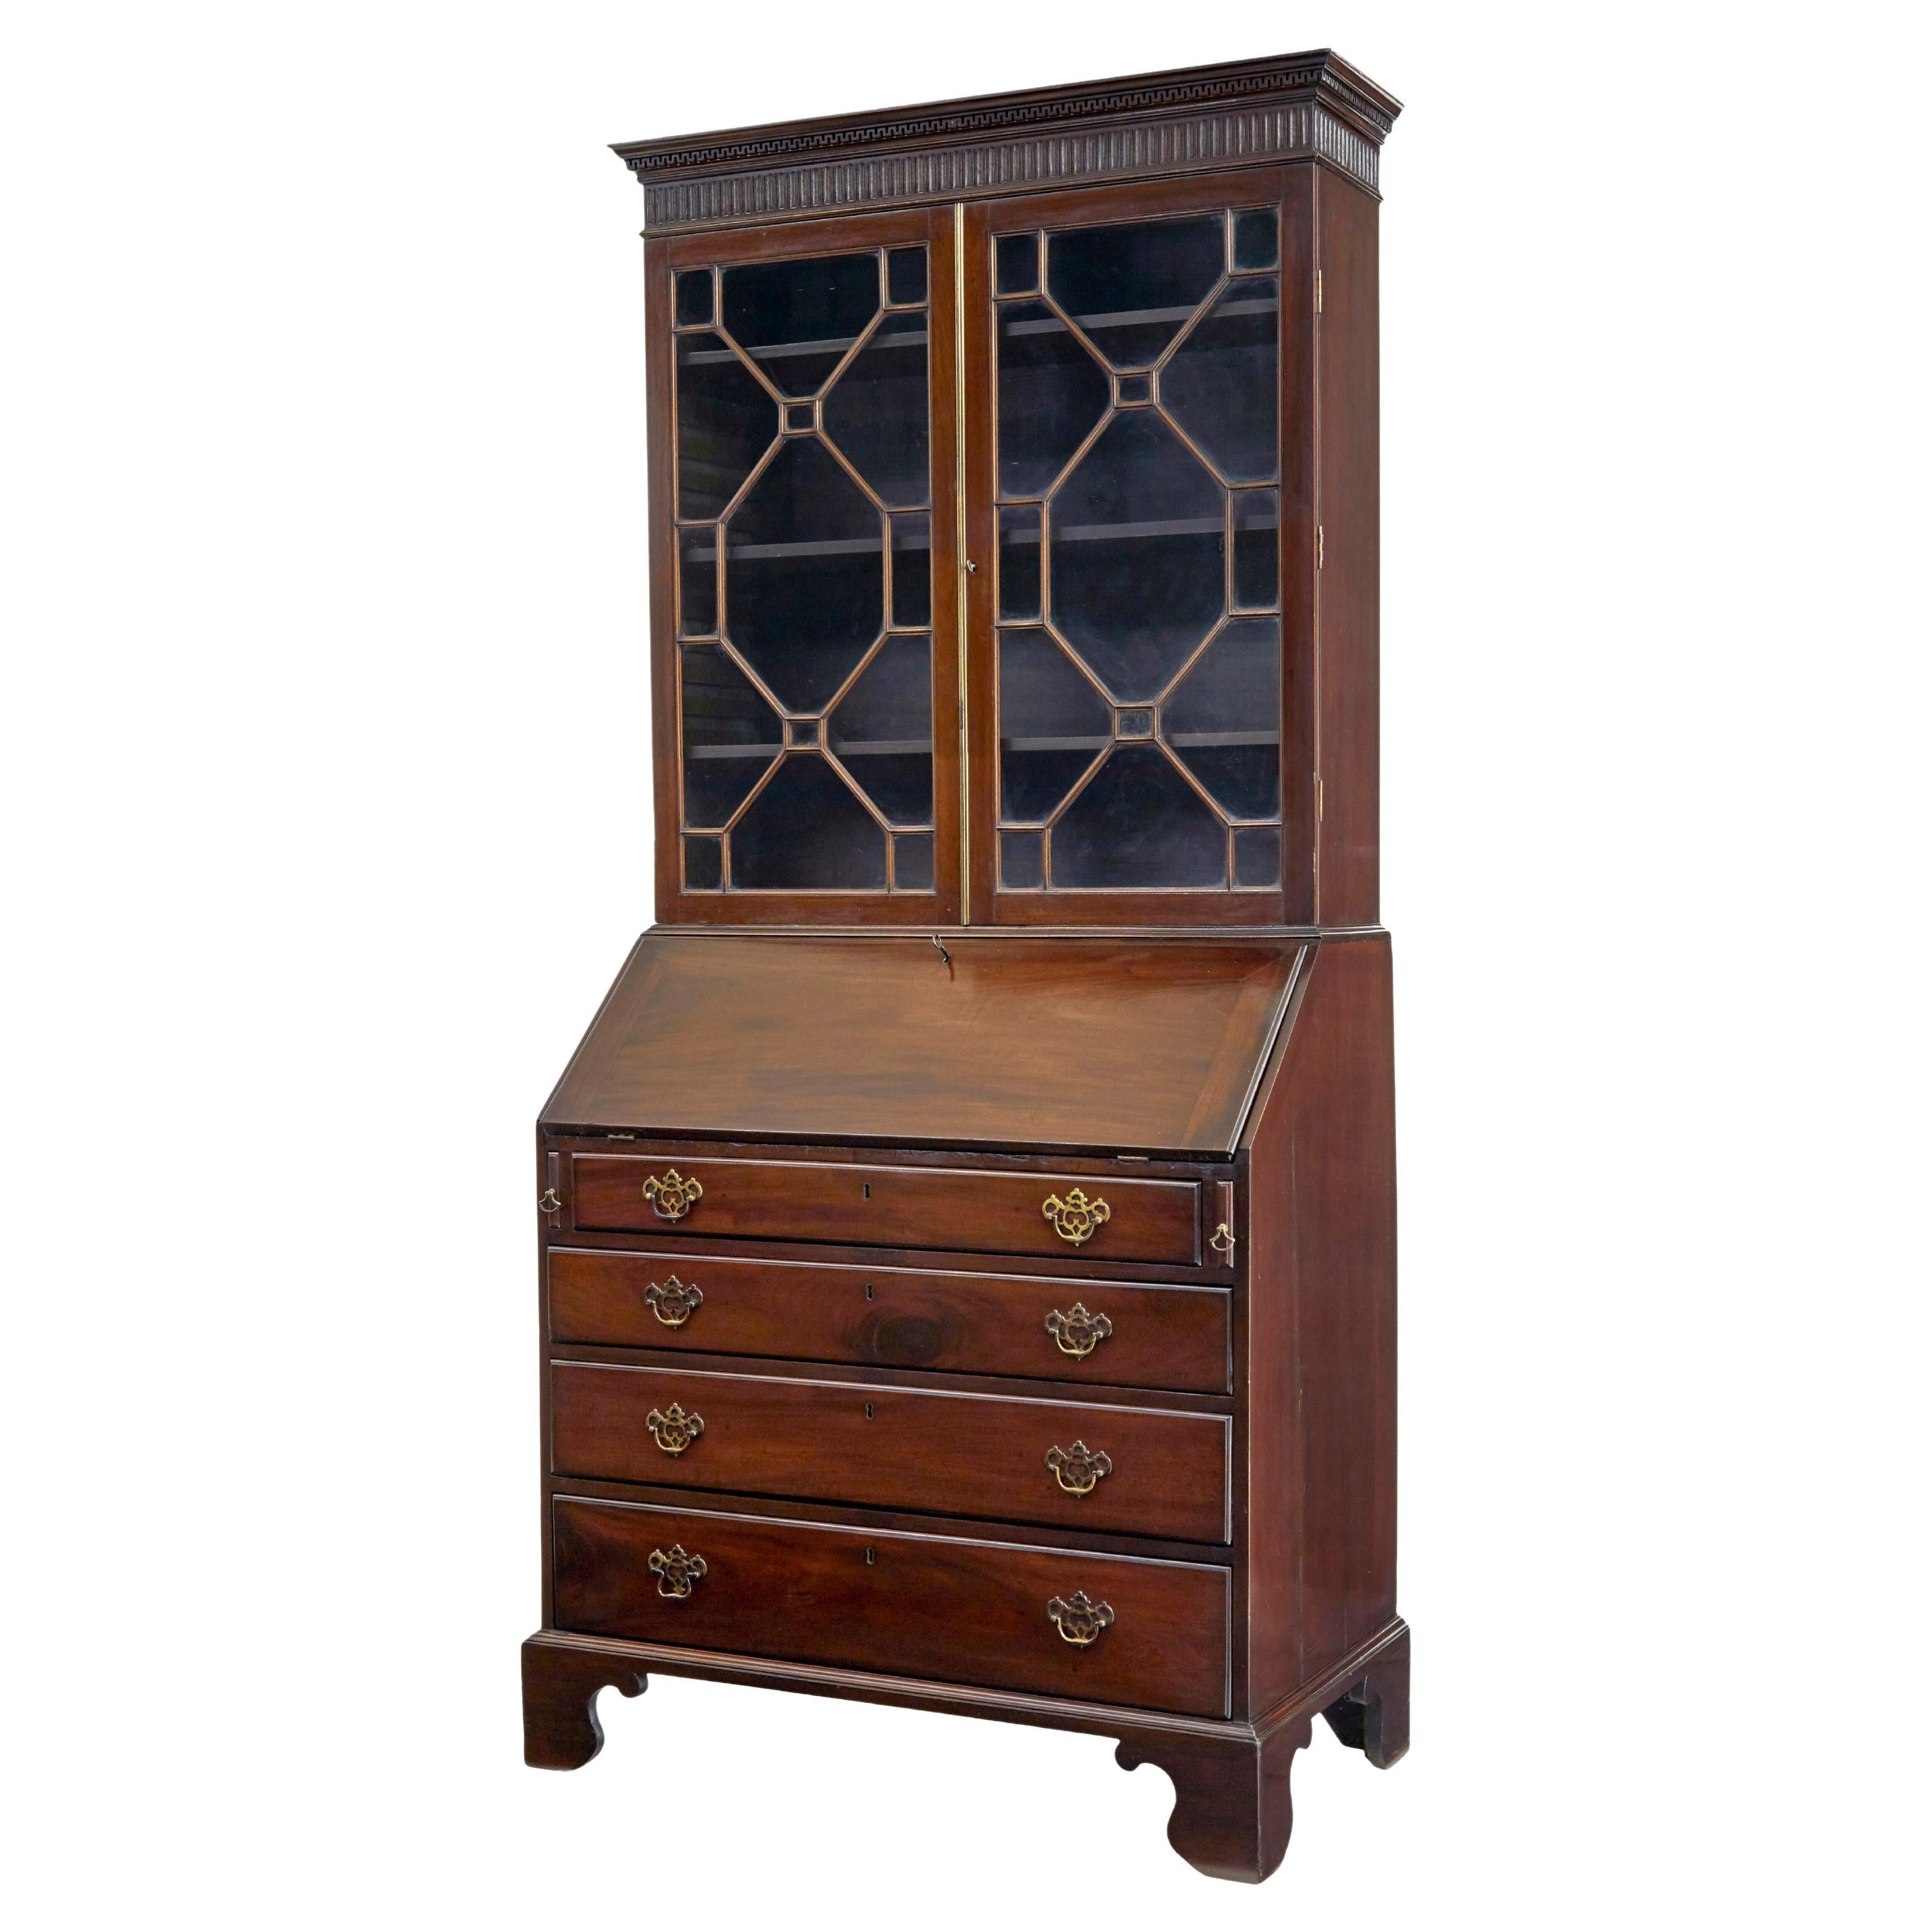 Early 19th century mahogany astral glazed bureau bookcase